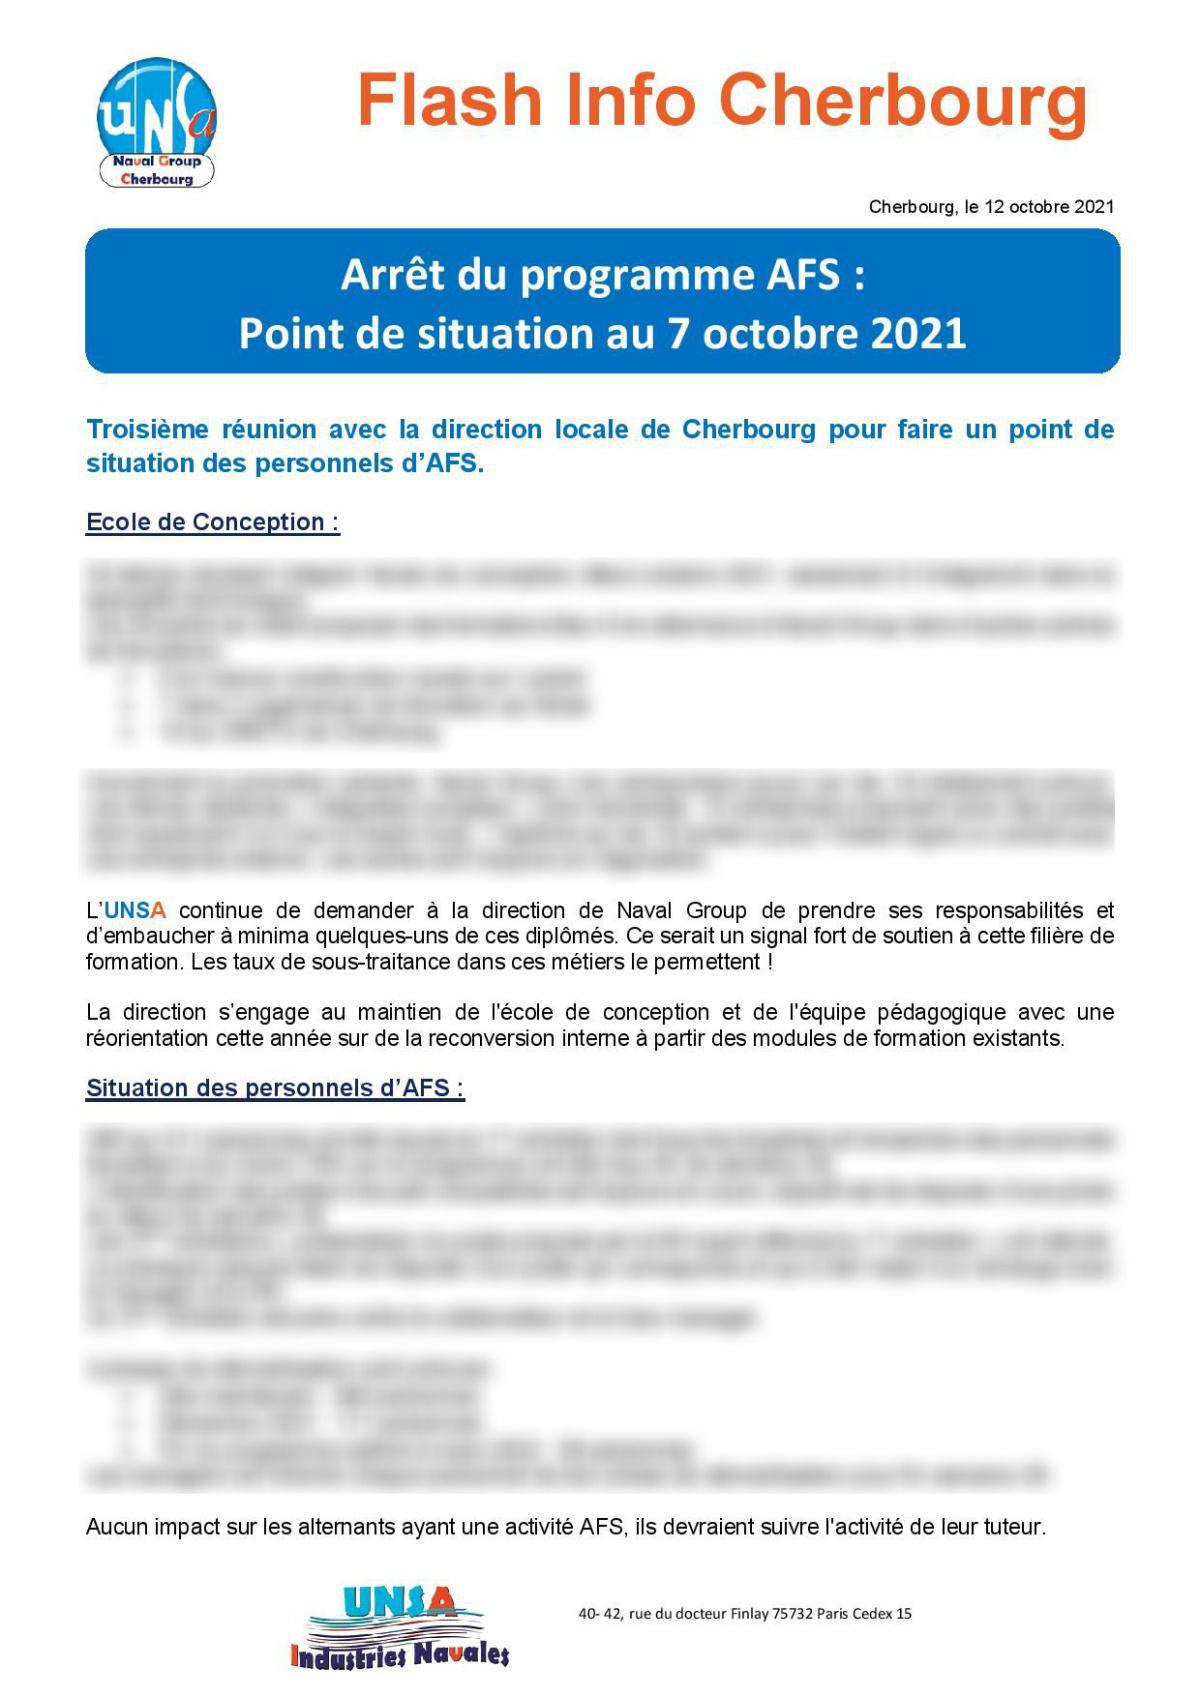 Arrêt du programme AFS : Point de situation au 7 octobre 2021